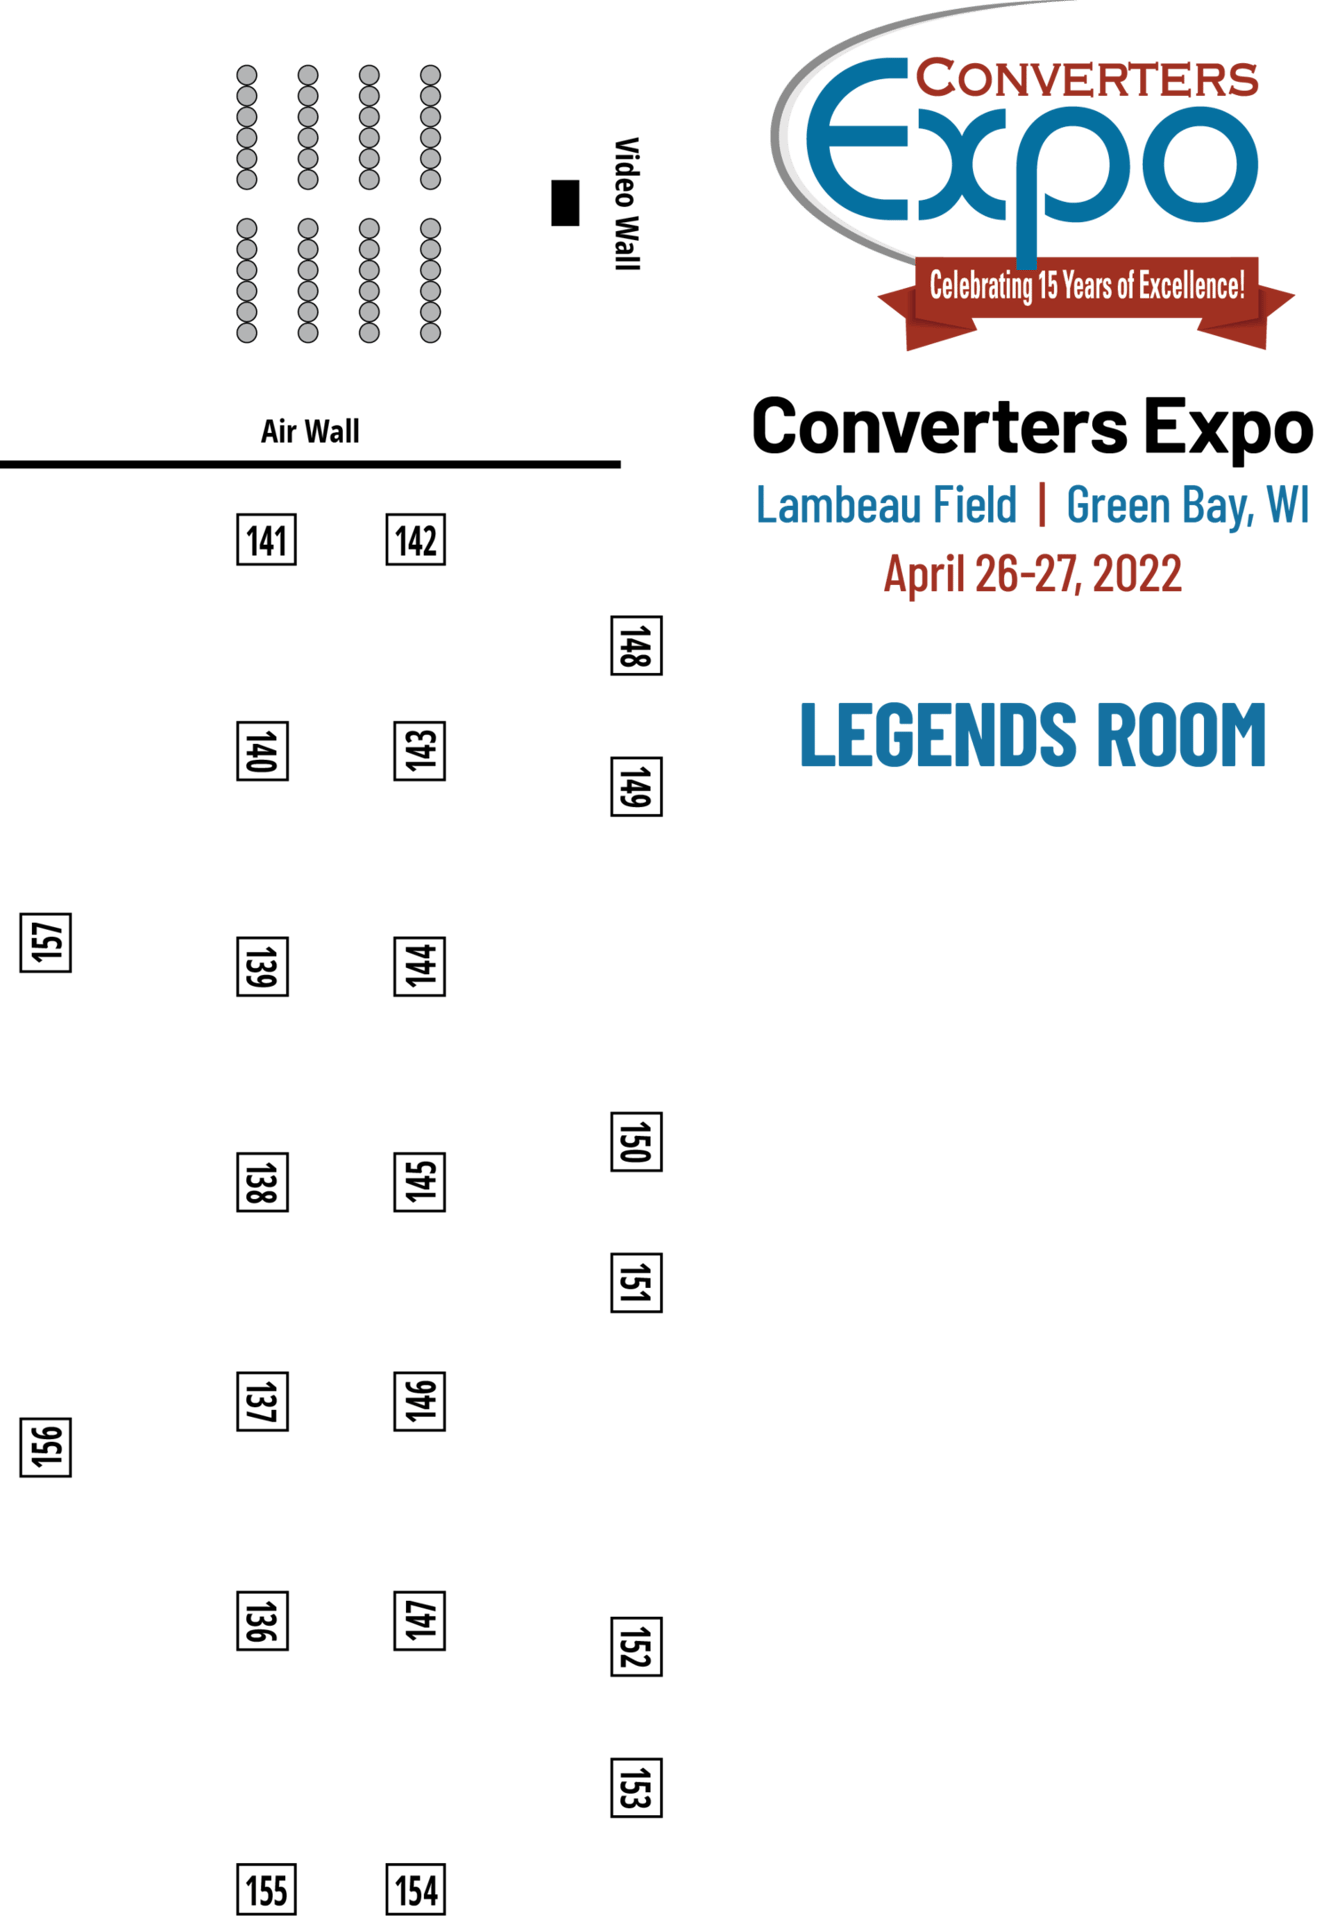 Converters Expo Floor Plan